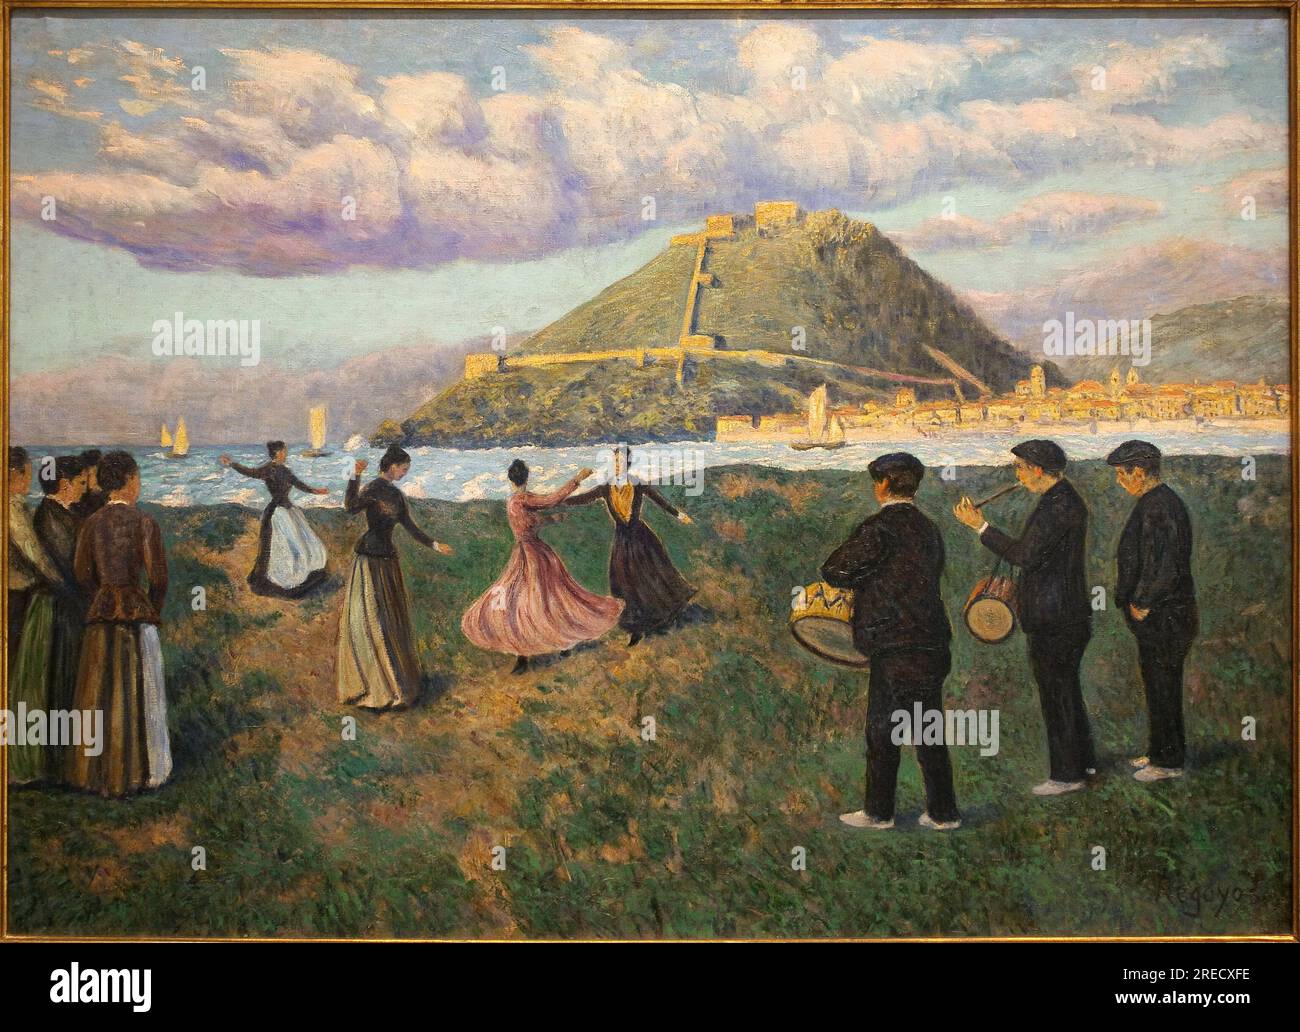 Fete basque (Bal a l'ancienne, a Sant Sebastia) (Espagne). Peinture de Dario De Regoyos (1857-1913), huile sur toile, vers 1890. Musee national des arts de Catalogne, Barcelone (Espagne). Stock Photo